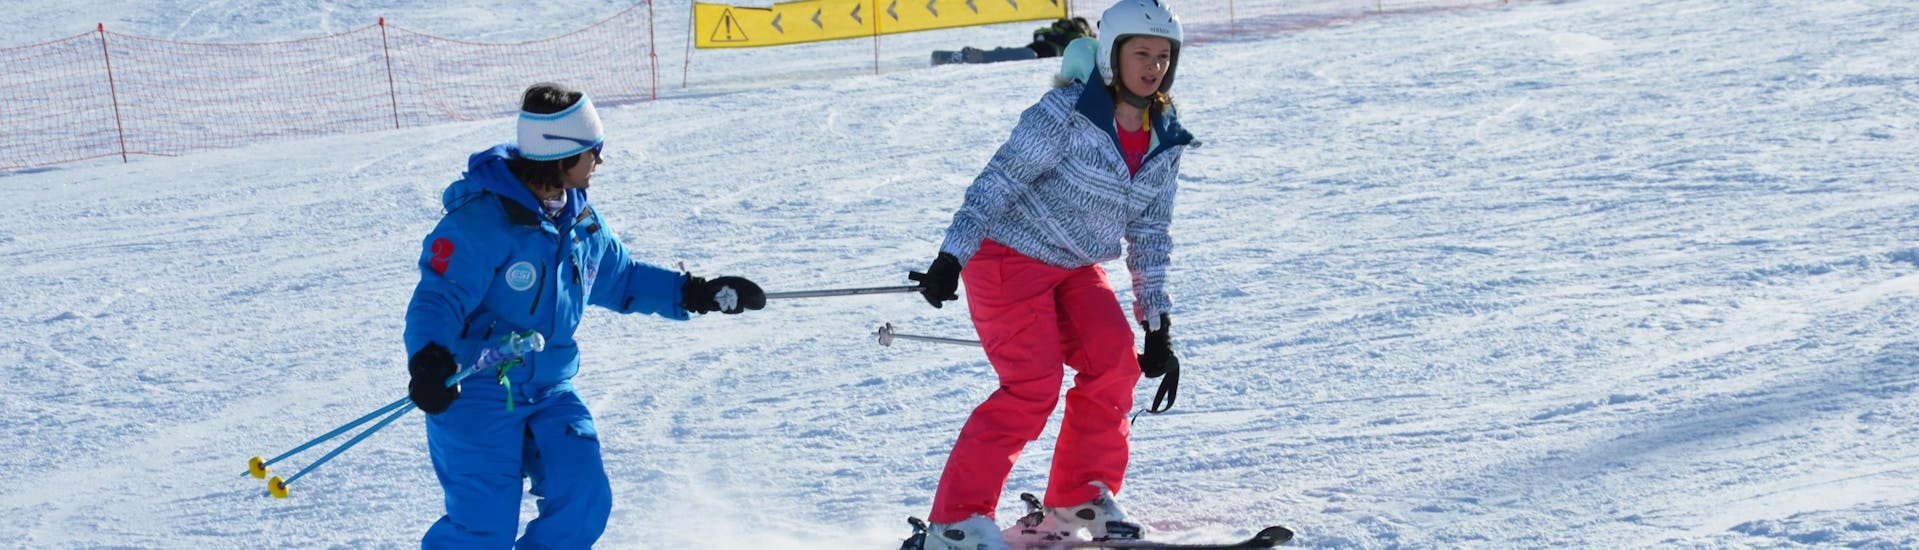 Un monitor de European Ski School de Les Deux Alpes acompaña a una esquiadora en sus primeros pasos sobre los esquís durante una clase particular de esquí para adultos.